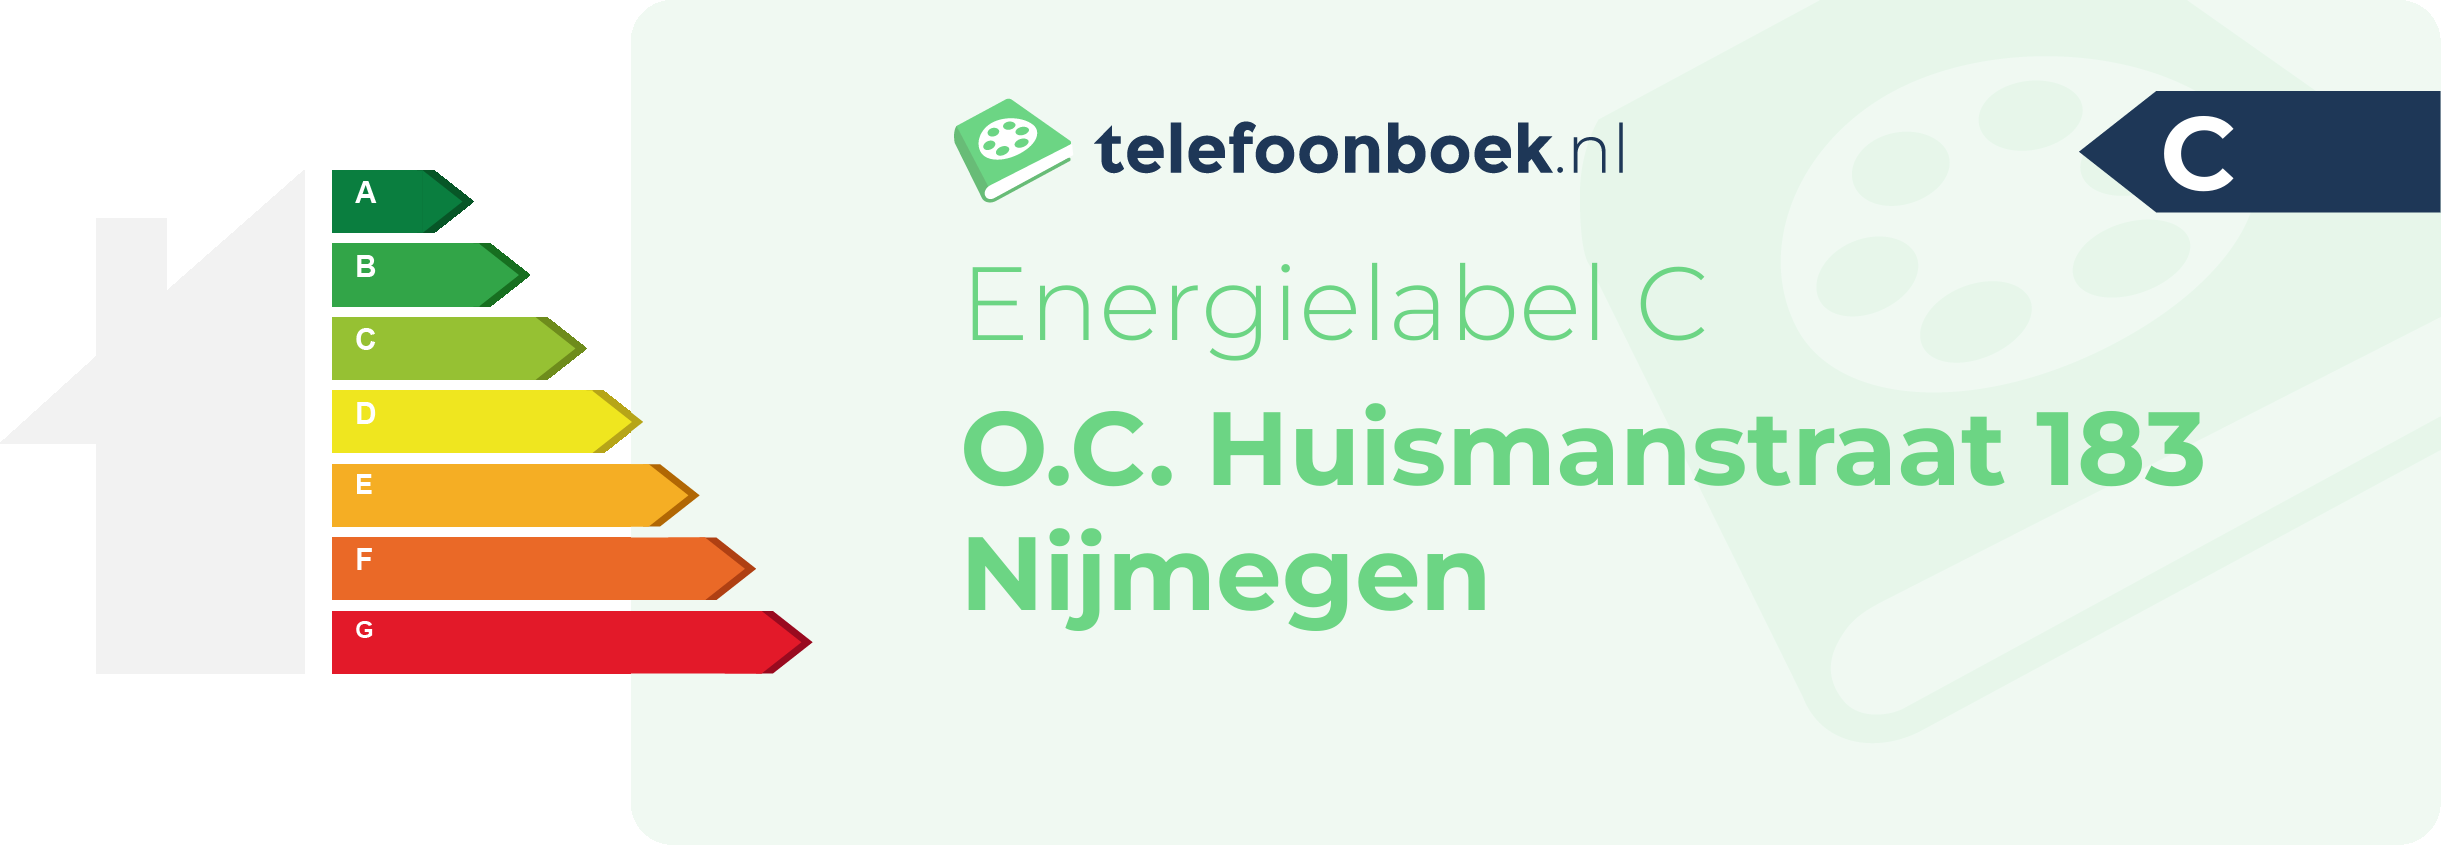 Energielabel O.C. Huismanstraat 183 Nijmegen